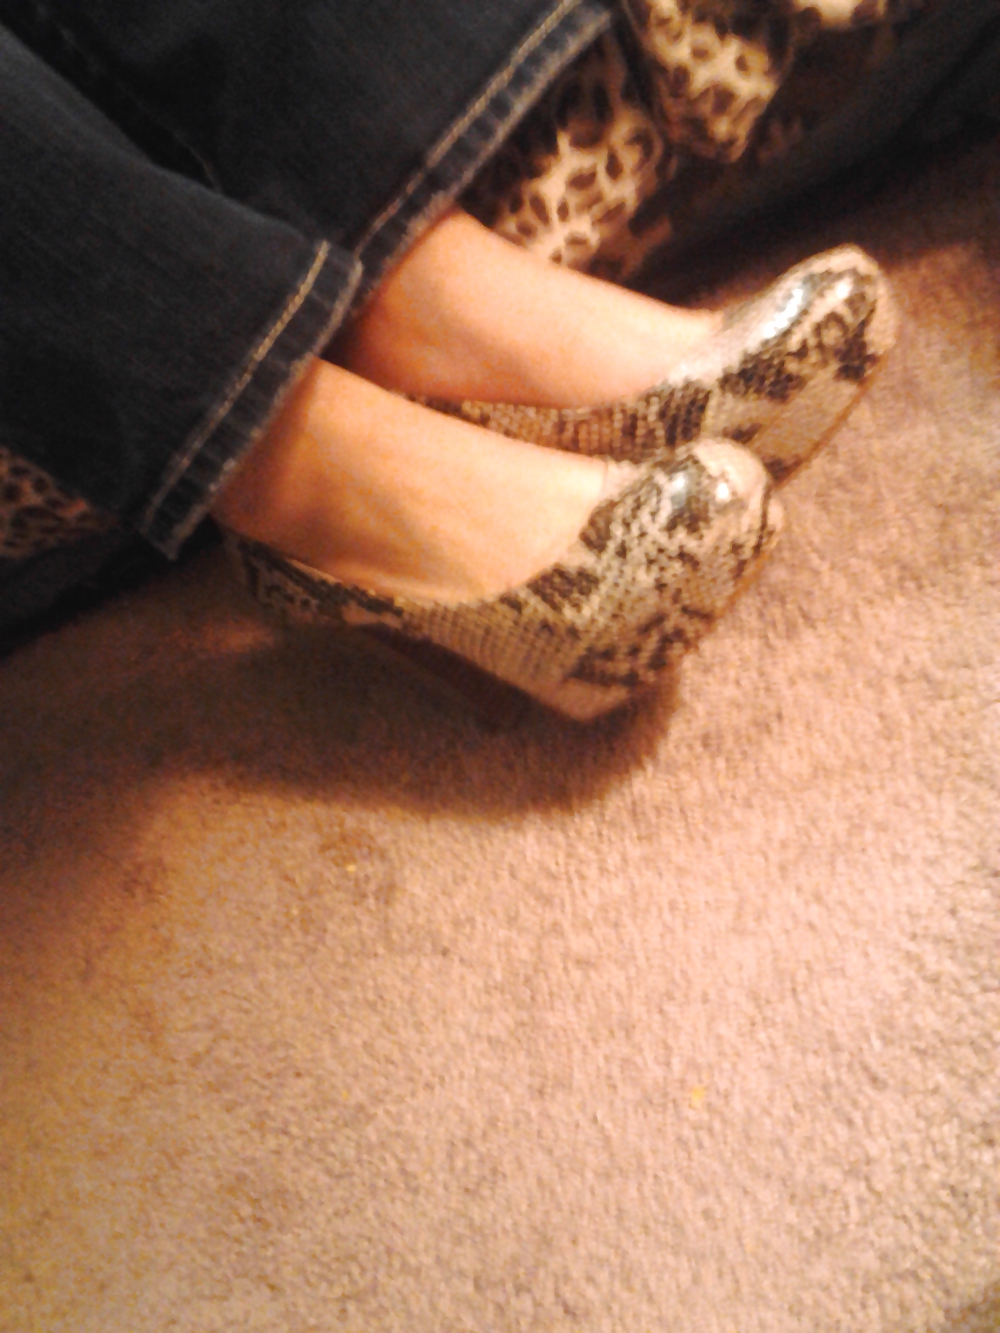 Gfs heels and feet #9377524